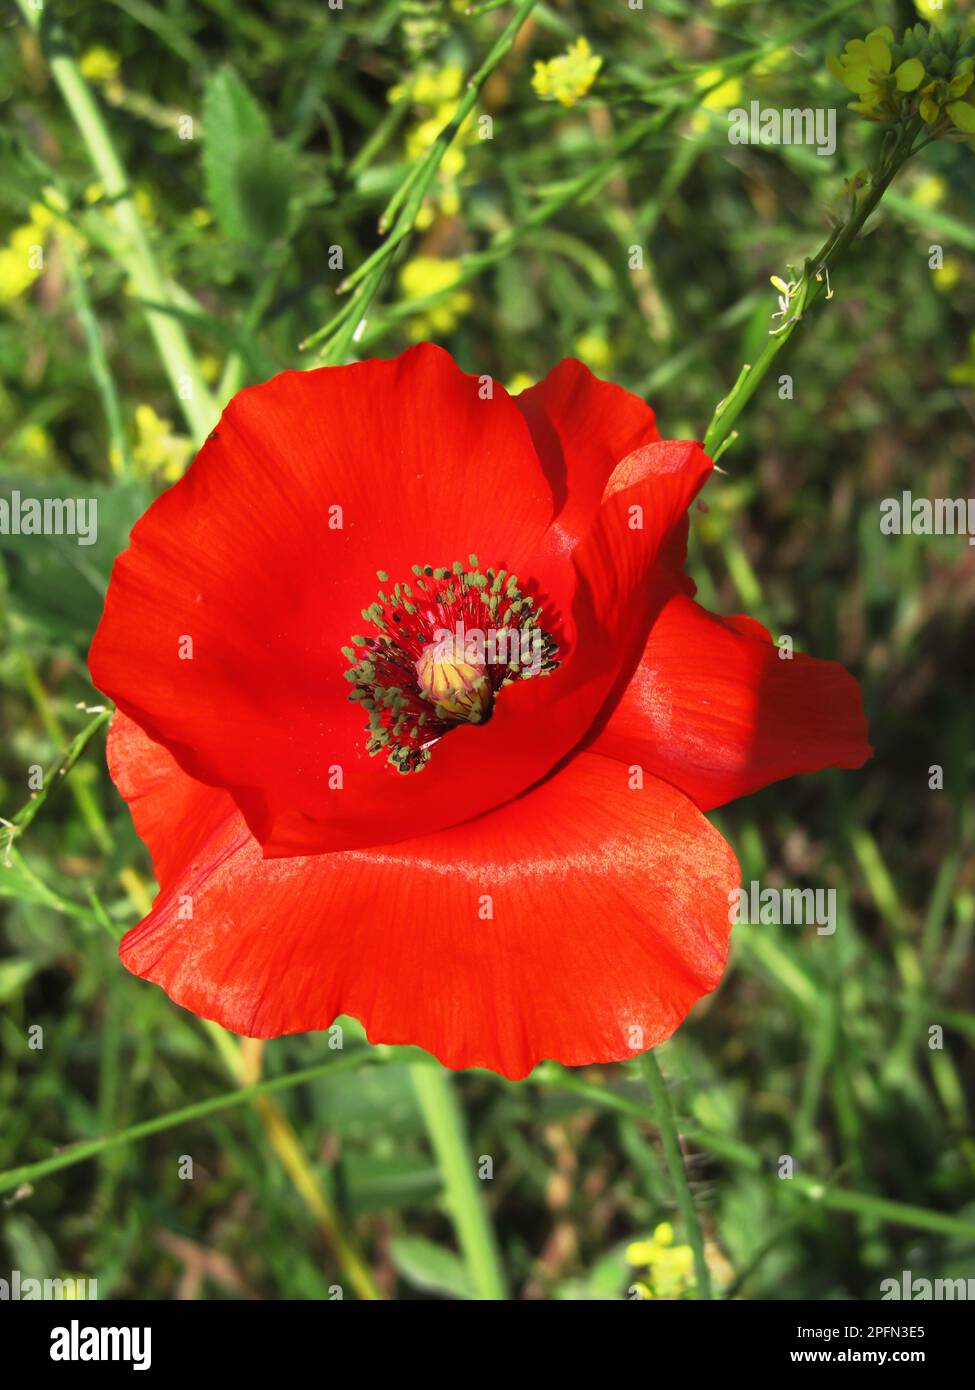 Gros plan de la fleur rouge vif d'un coquelicot de Flandre. Banque D'Images